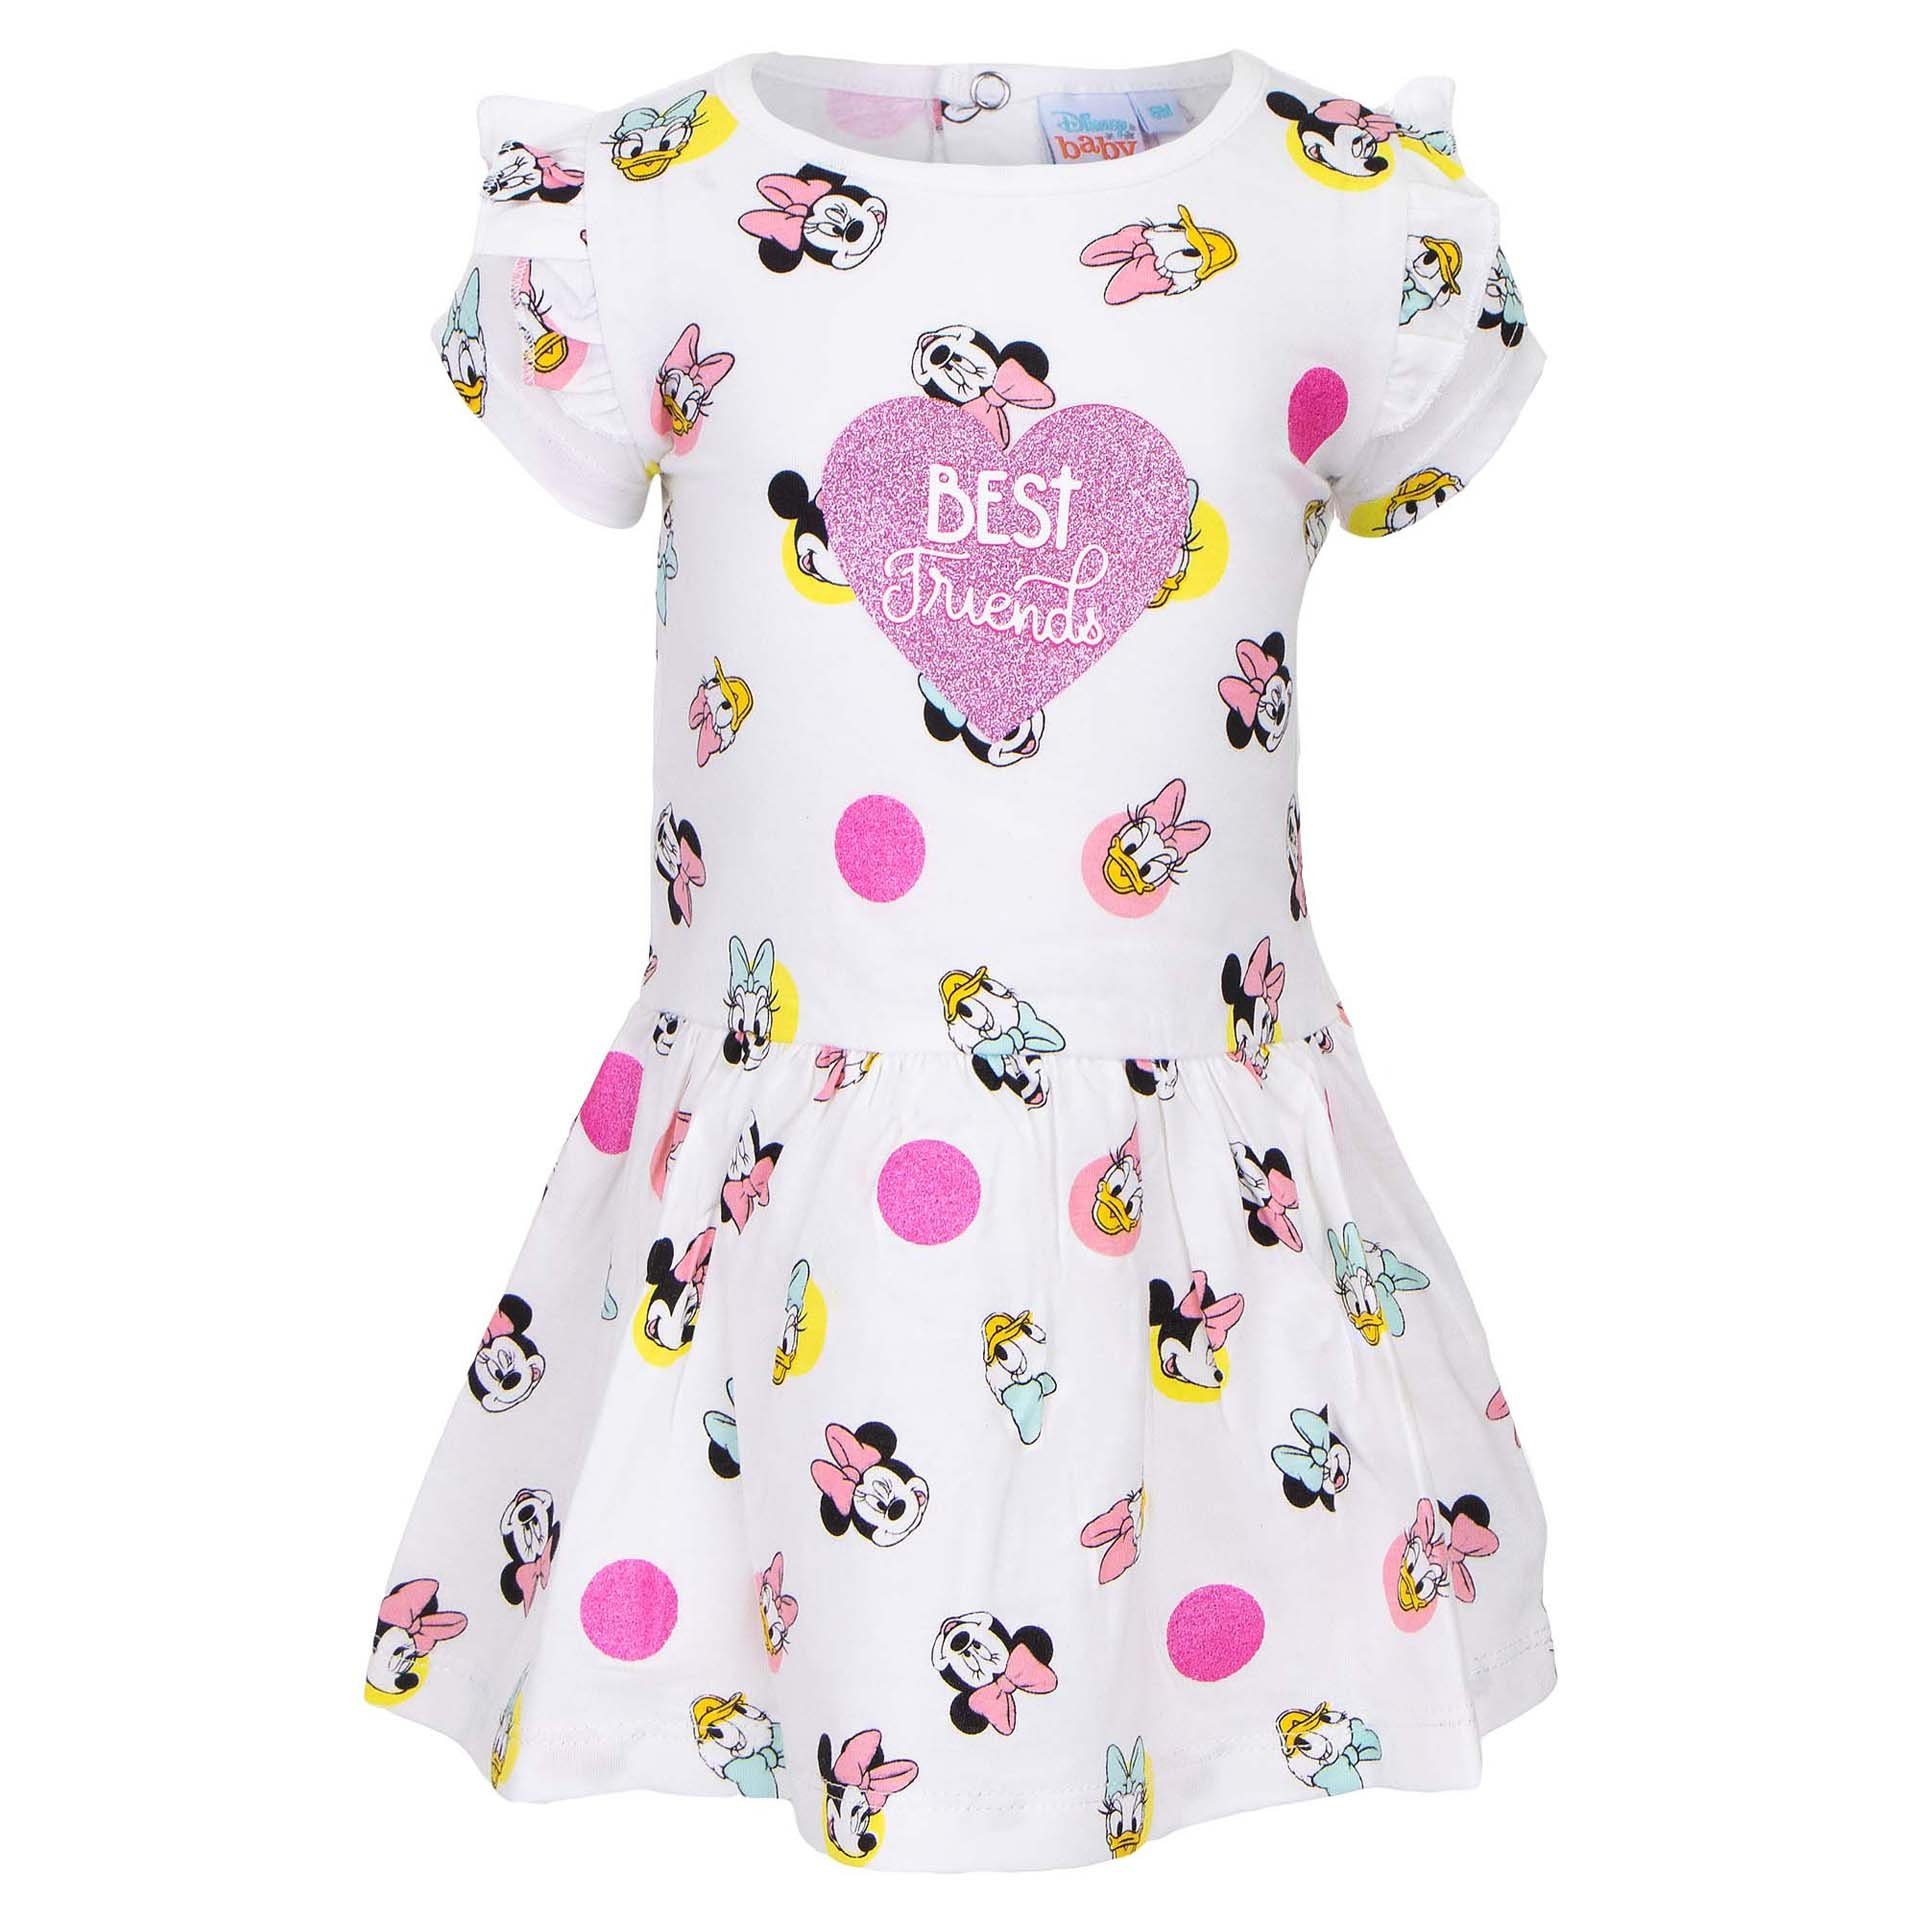 Disney Minnie Mouse Sommerkleid Minnie Maus und Daisy Duck Baby Kleid Gr. 68 bis 86, 100% baumwolle Weiß